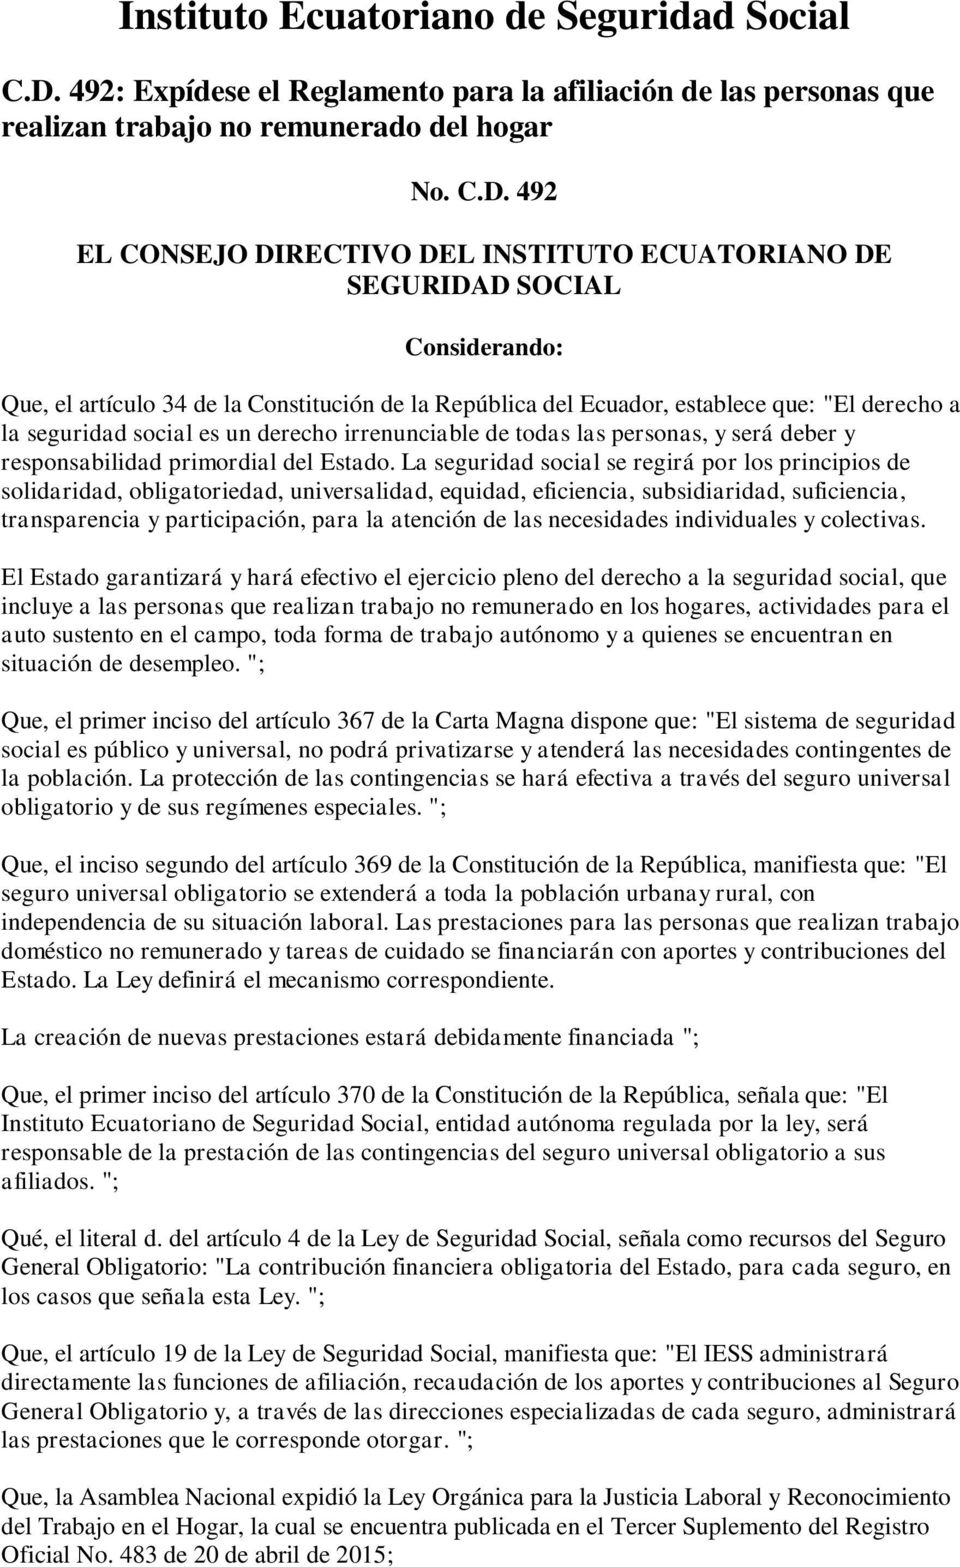 492 EL CONSEJO DIRECTIVO DEL INSTITUTO ECUATORIANO DE SEGURIDAD SOCIAL Considerando: Que, el artículo 34 de la Constitución de la República del Ecuador, establece que: "El derecho a la seguridad